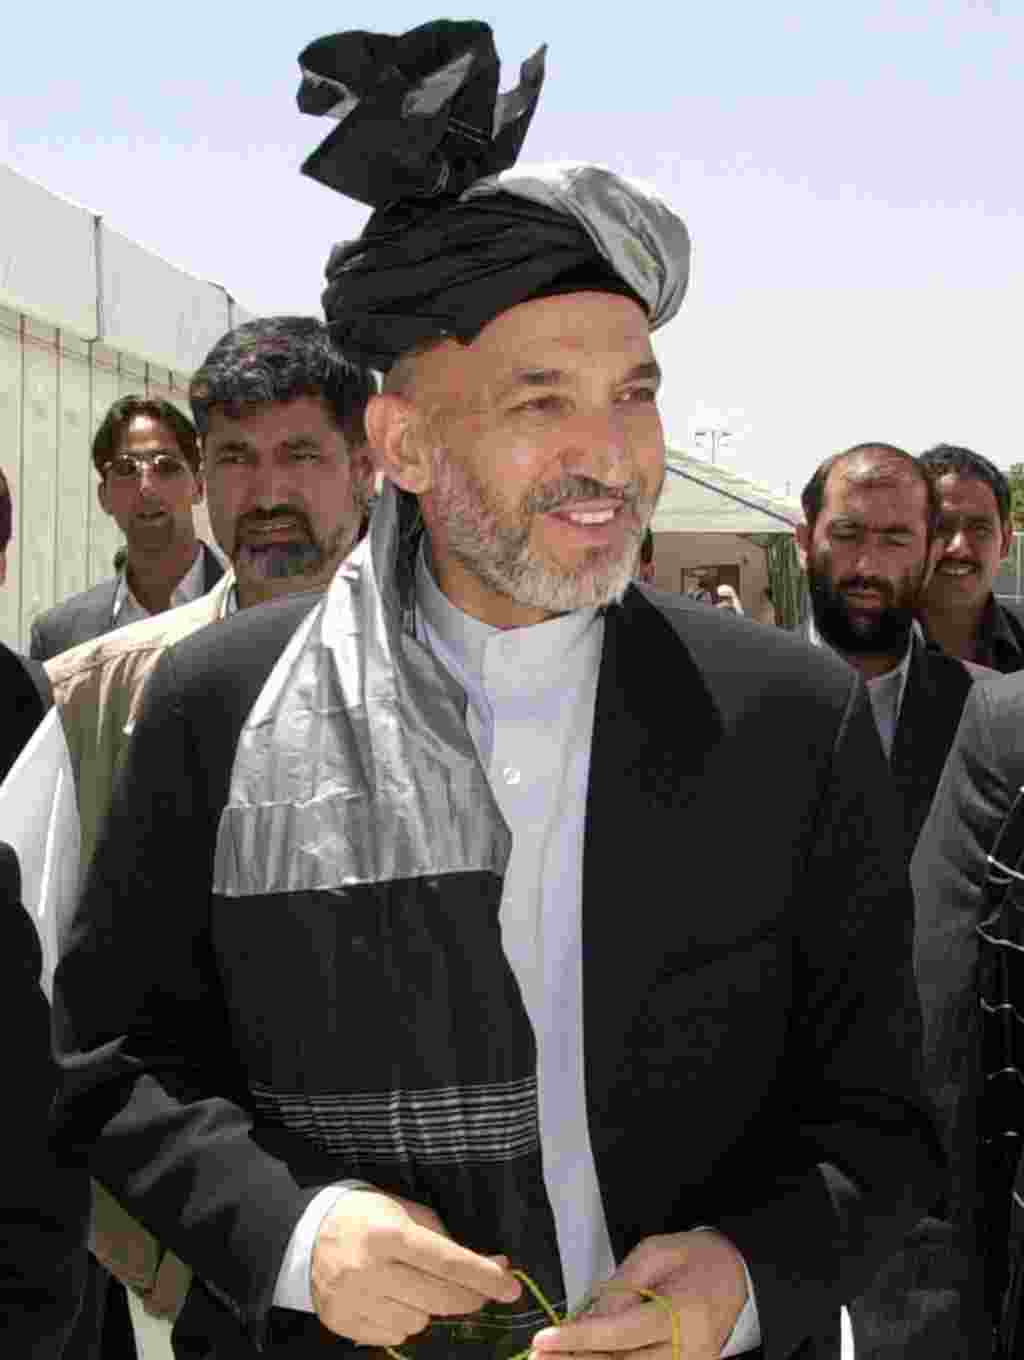 ژوئن ۲۰۰۲- یک شورای عالی ، معروف به لویه جرگه، حامد کرزی را به عنوان رییس دولت انتقالی افغانستان انتحاب می کند. دولت پیش نویس قانون اساسی جدید را تدوین خواهد کرد و مقدمات برگزاری انتخابات در ۱۸ماه آینده را فراهم می آورد.